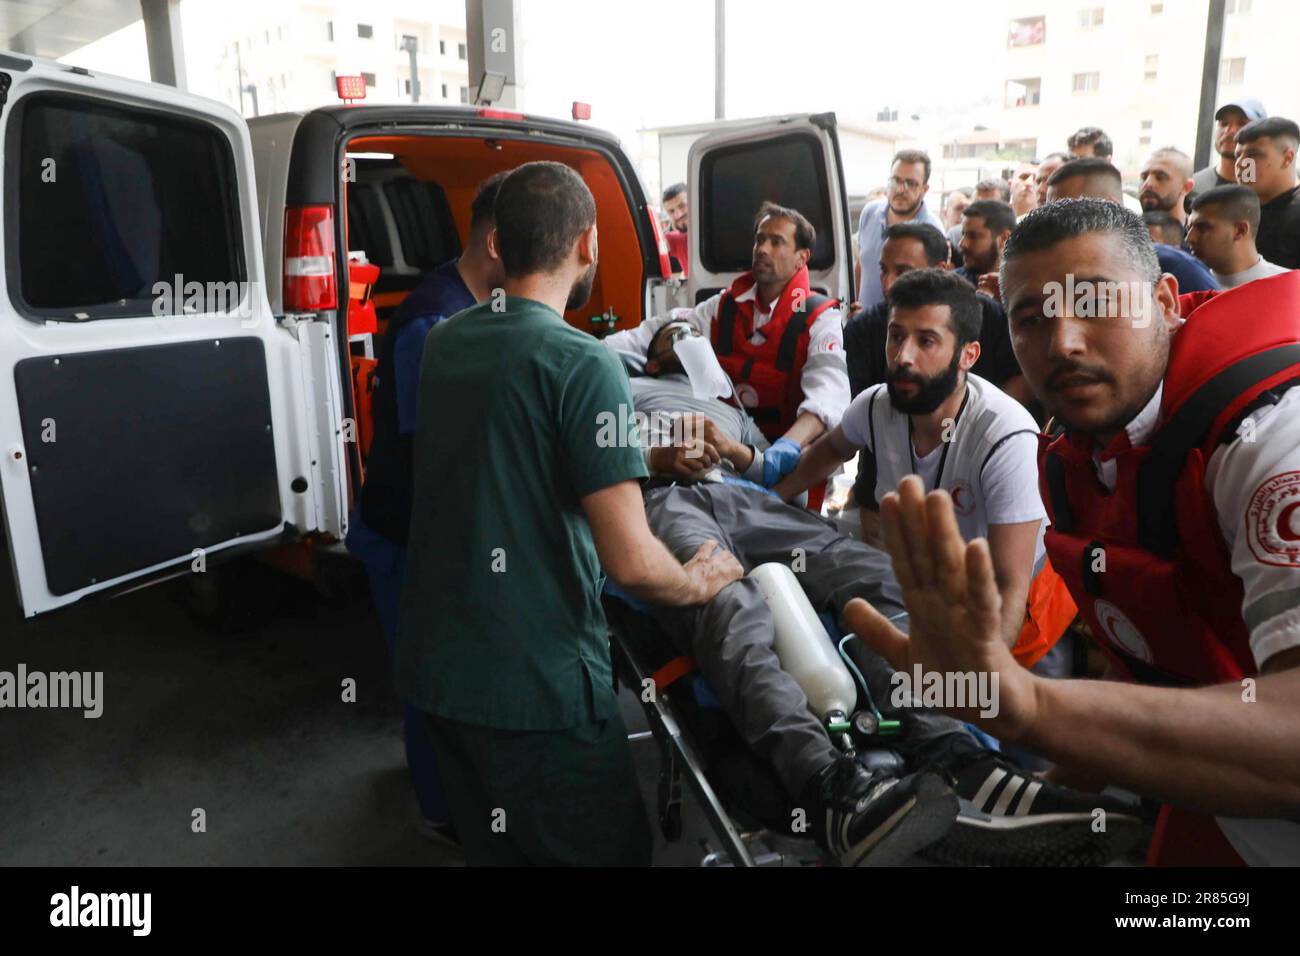 19 giugno 2023: Jenin, Cisgiordania, Palestina. 19 giugno 2023. Un palestinese ferito viene salvato dai paramedici a seguito degli scontri tra le forze israeliane e i palestinesi nel campo profughi palestinesi di Jenin, nella parte settentrionale della Cisgiordania. Cinque palestinesi, tra cui un ragazzo di 15 anni, sono stati uccisi dalle forze israeliane durante un'incursione sotto copertura israeliana nel campo profughi di Jenin prima dell'alba di lunedì. Gli elicotteri israeliani di apache hanno sparato missili contro i militanti palestinesi durante il raid. Sette soldati israeliani sono stati feriti da improvvisati dispositivi esplosivi posti nelle loro jeep (Credit Image: © Mohammed Foto Stock